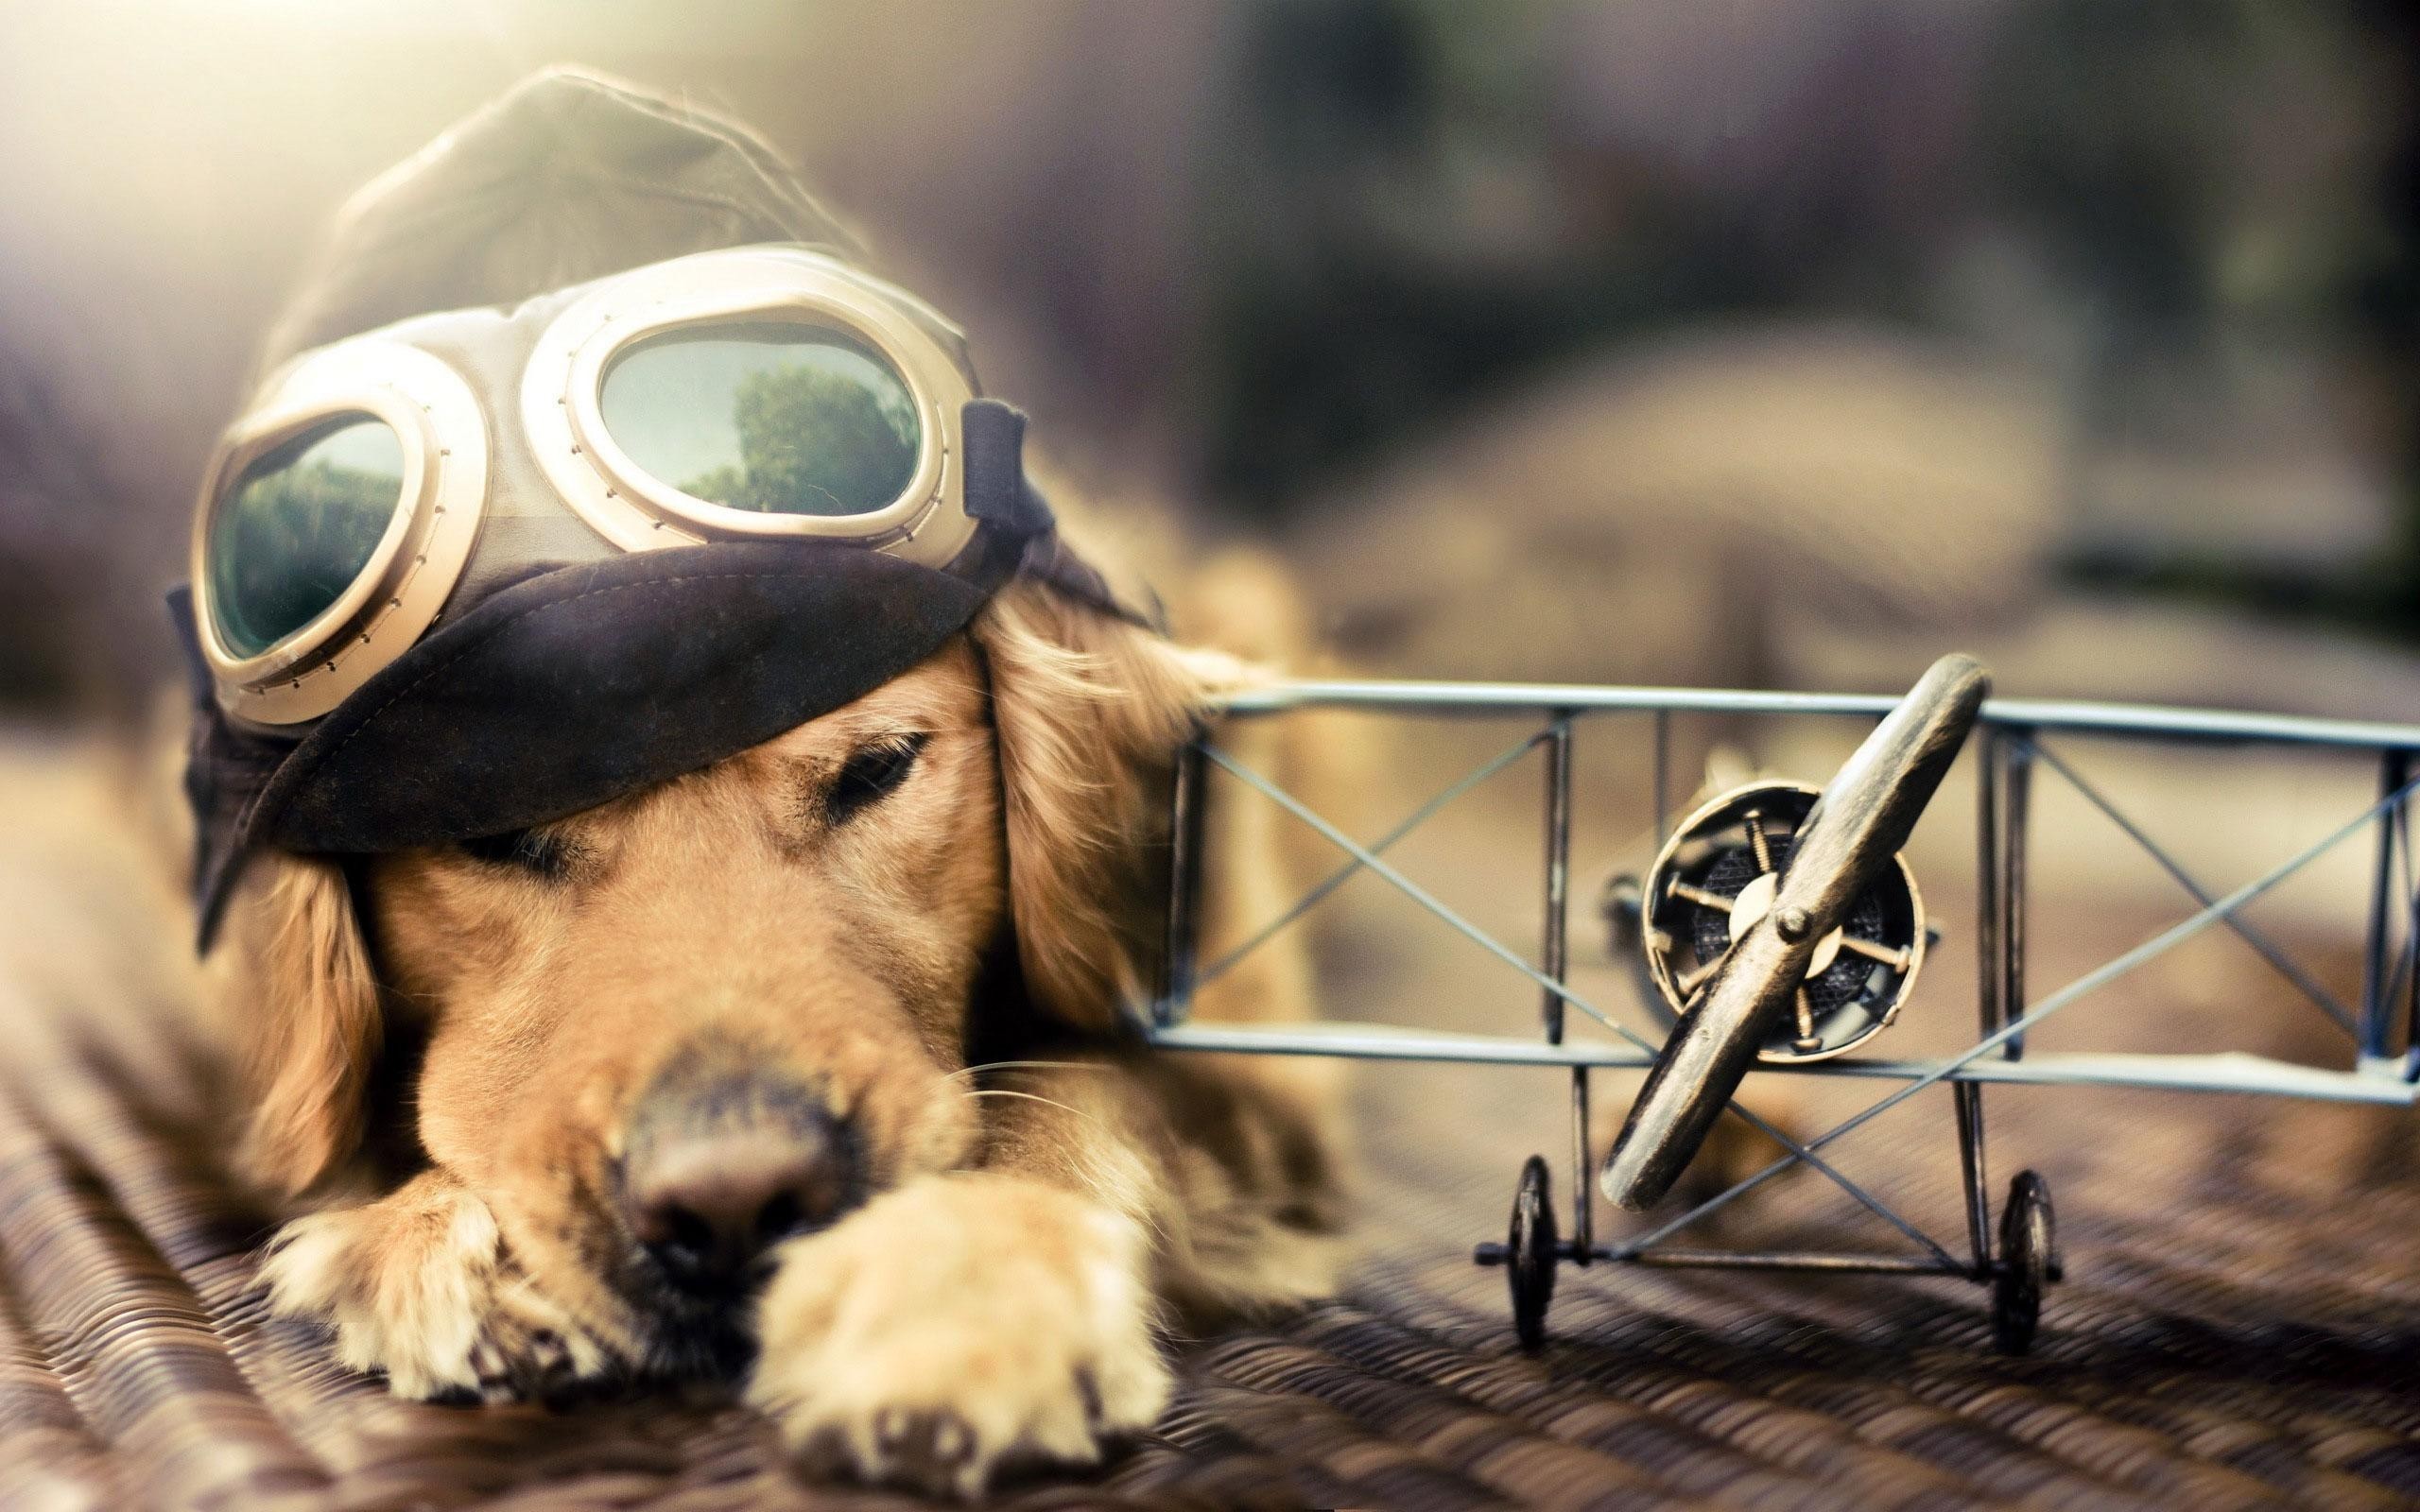 General 2560x1600 dog airplane miniatures pilot golden retrievers animals goggles sunlight mammals closeup